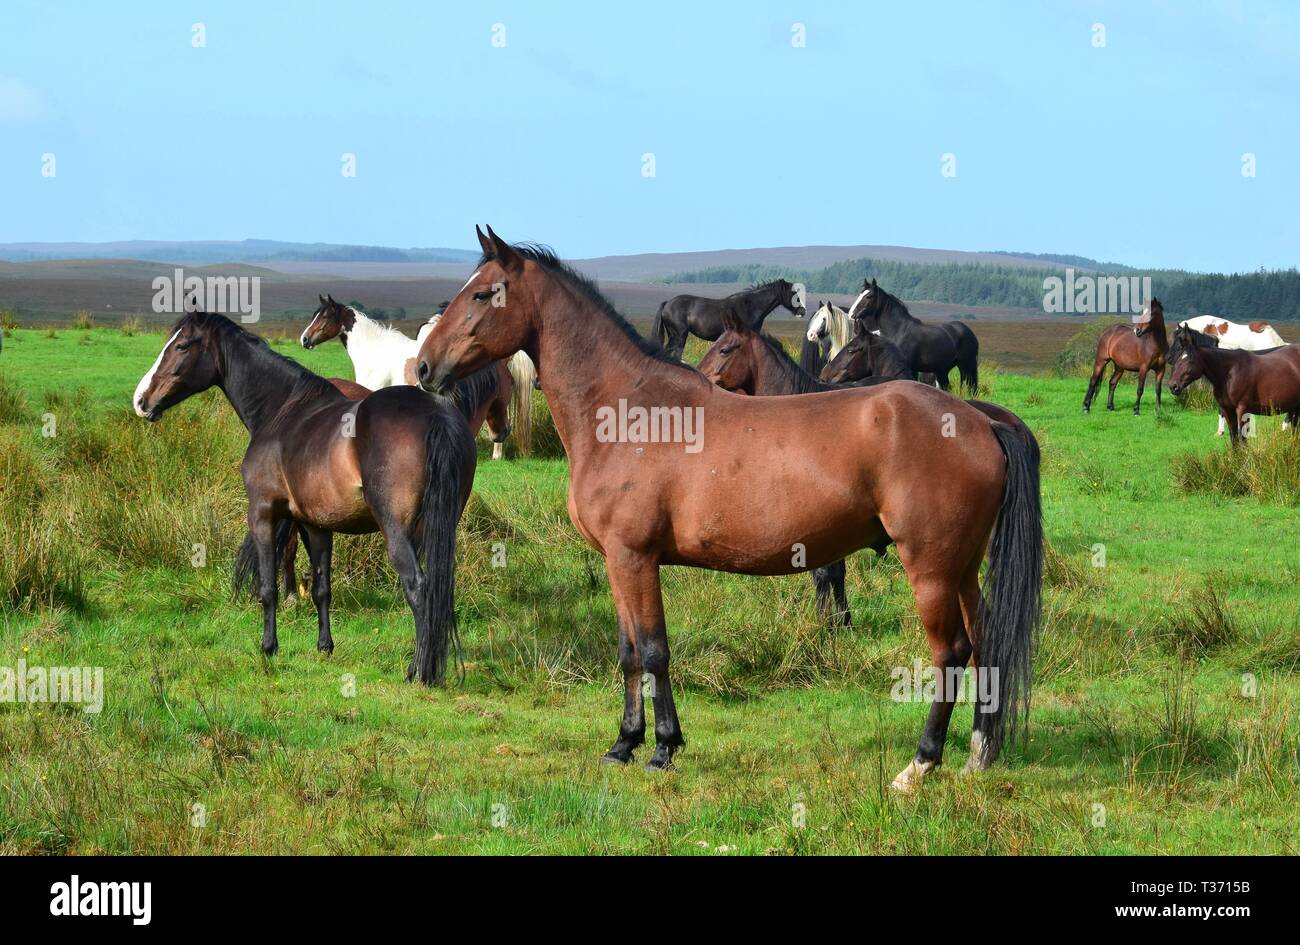 Eine Herde von Pferden in Irland. Ein Schacht Pferd stehend vor. Die meisten Pferde schauen aufmerksam in die gleiche Richtung. Stockfoto